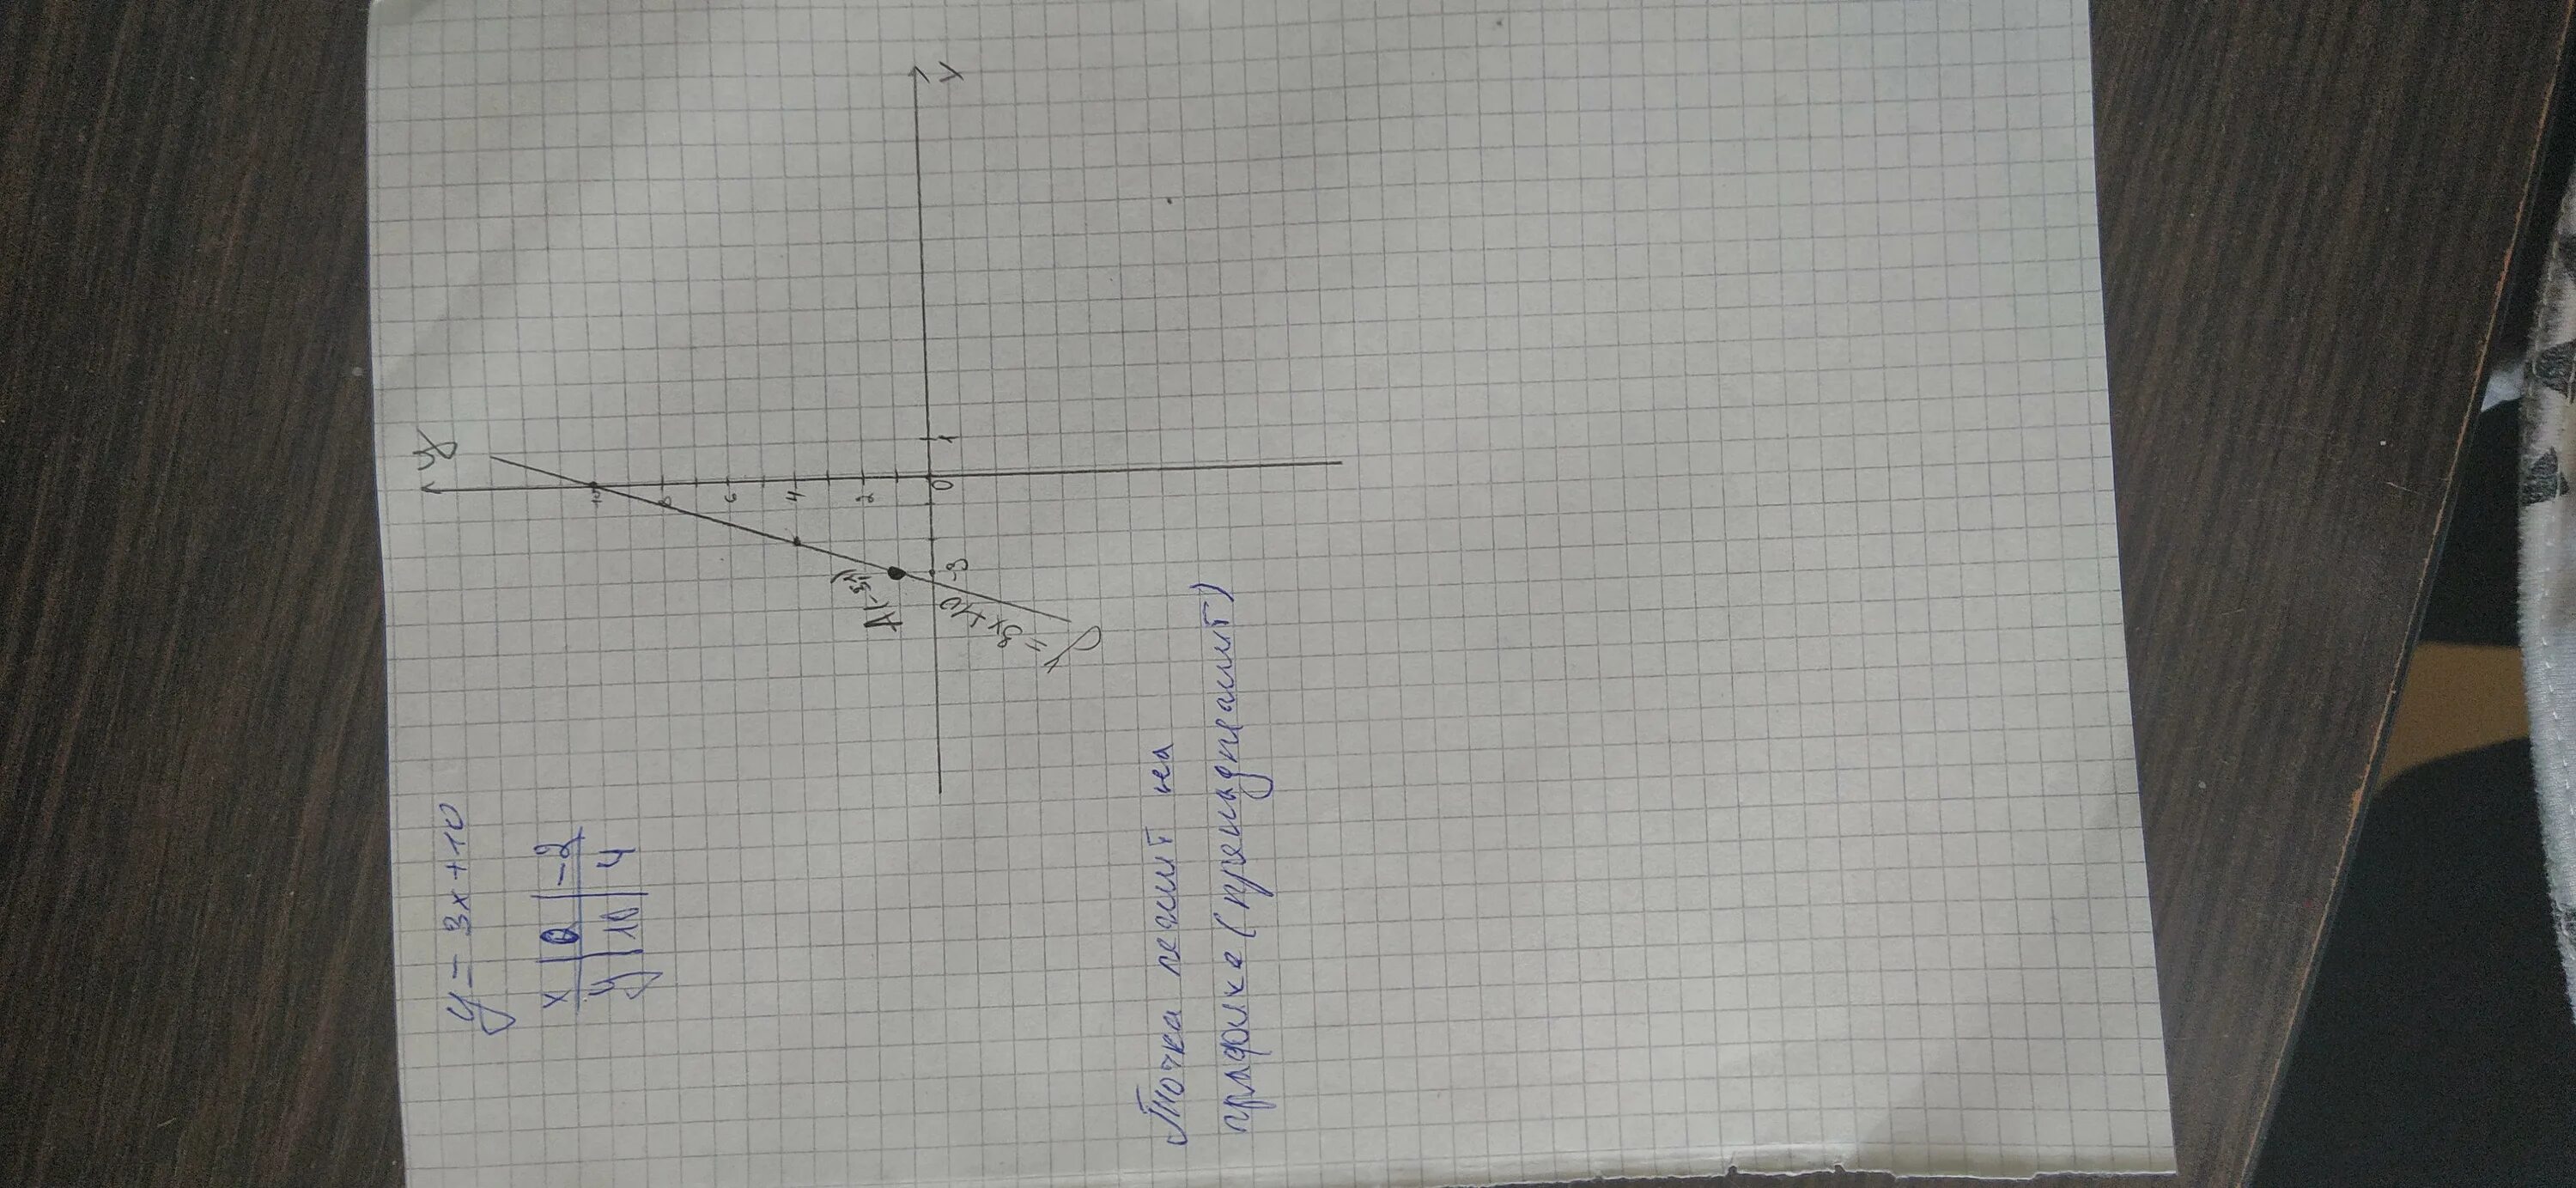 Функция задана y 3x 7. Функция задана формулой y=3x+10 где лежит точка а(-3;1). Функция задана формулой y=3х-22 где лежит точка а 7 0. Выше ниже или принадлежит графику точка -3 1. Пример черчения графиков собирающей линзы.